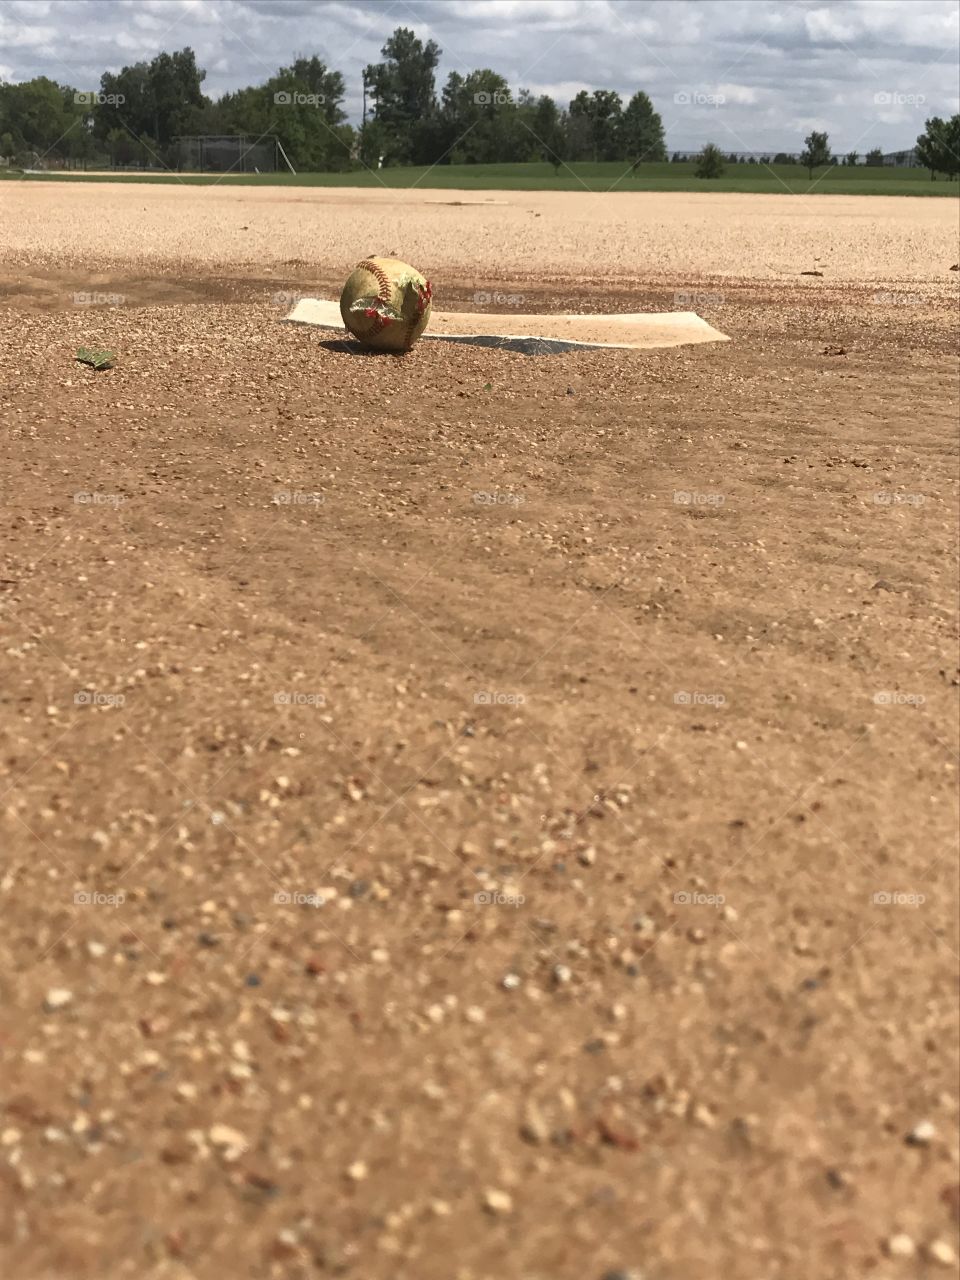 Baseball fun